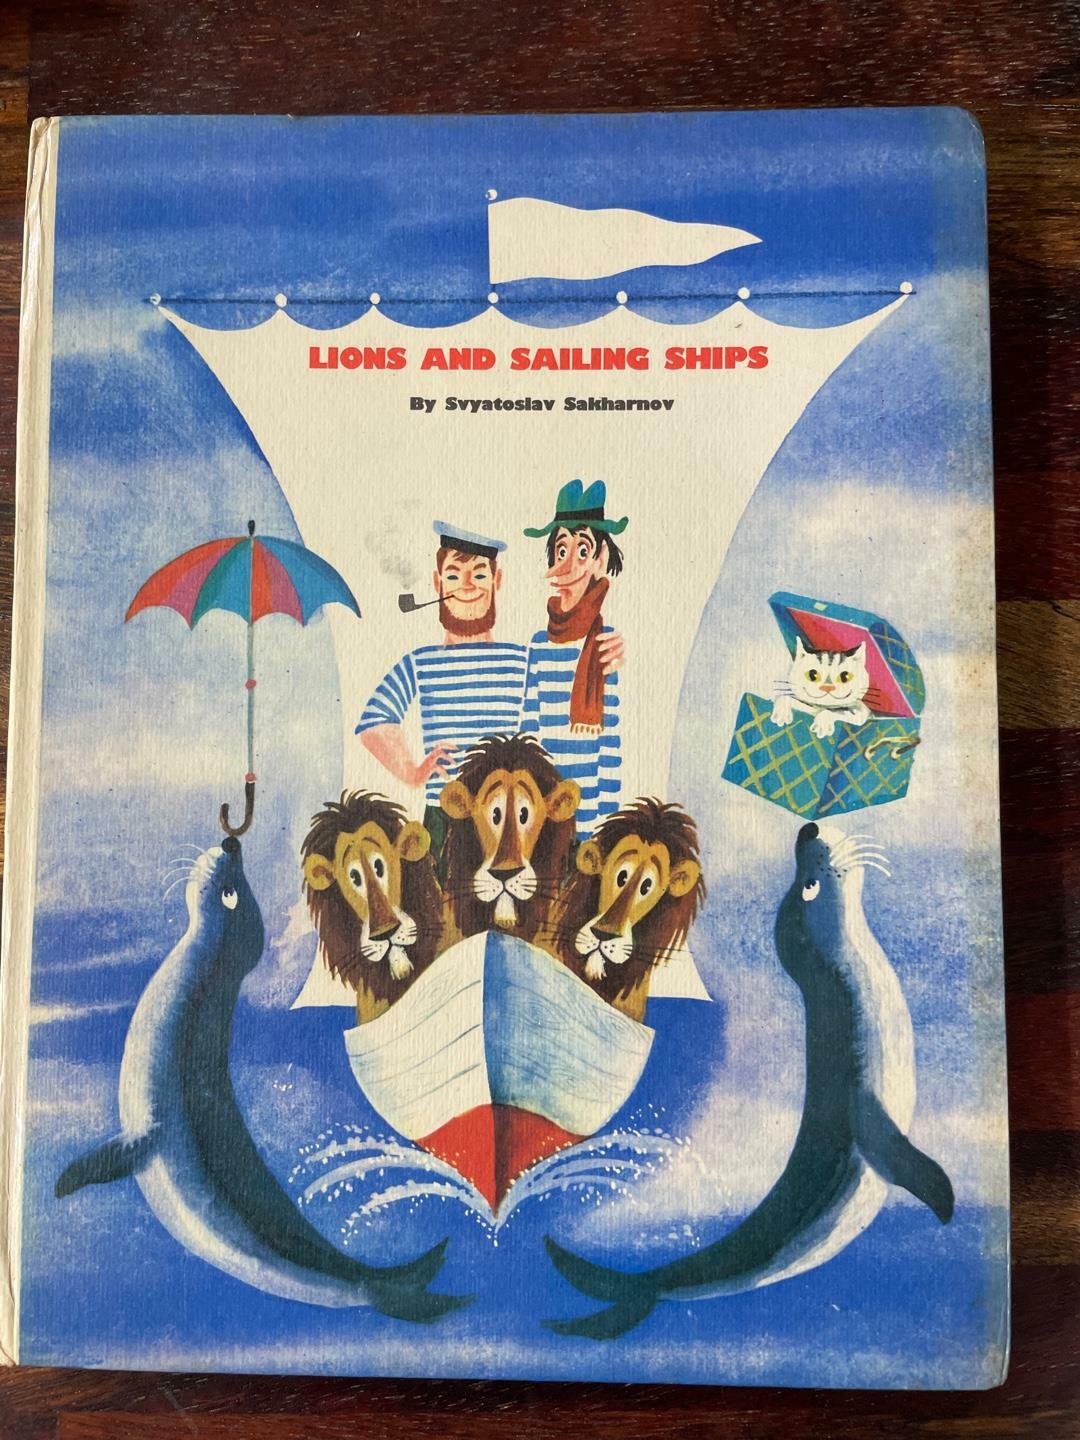 [중고] Lions and sailing ships - Svatoslav Sakharnov (hardcover)